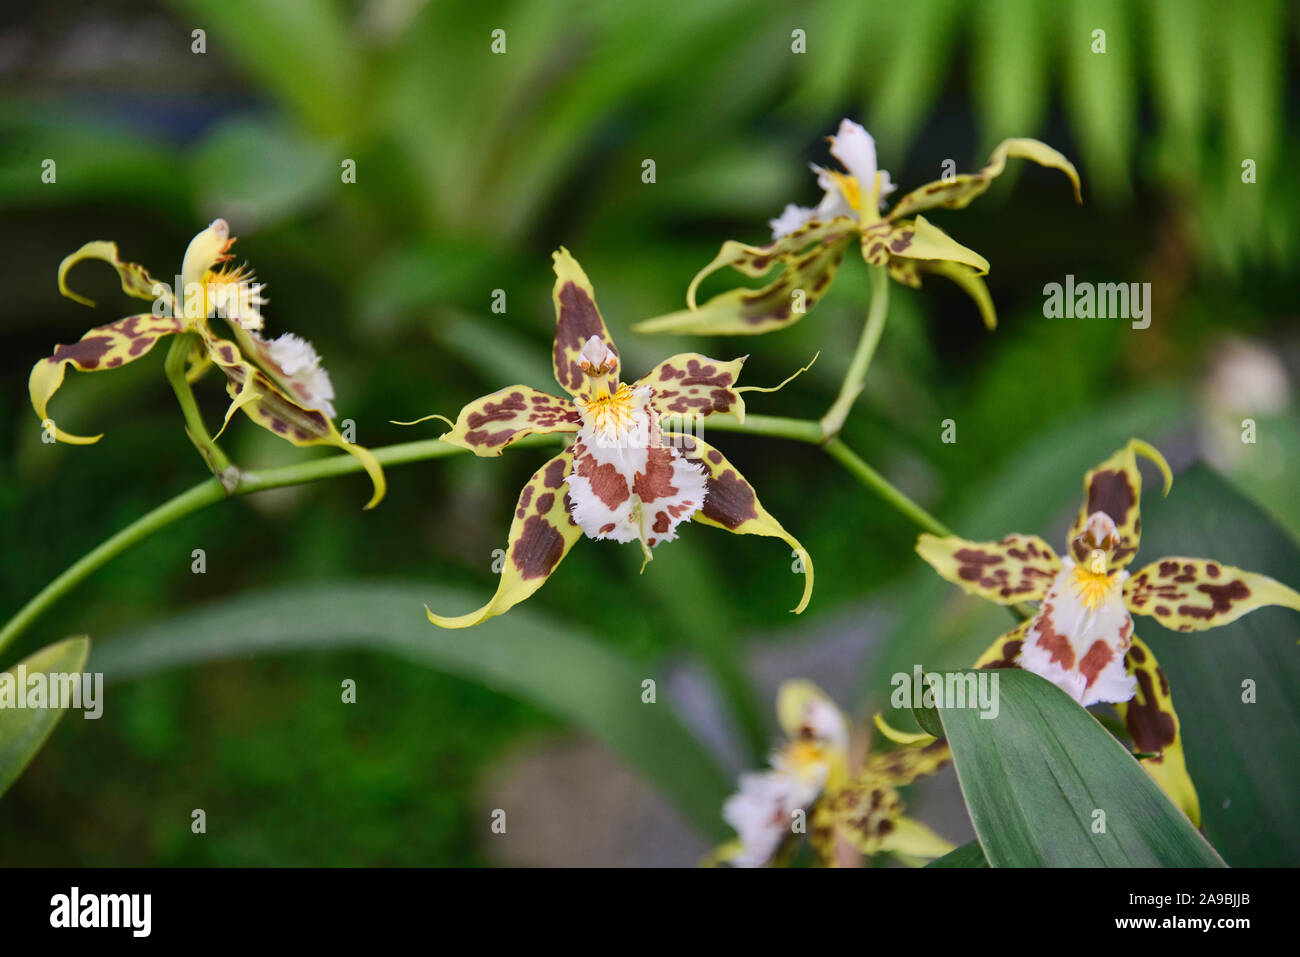 Odontoglossum orchids in the Quito Botanical Gardens, Quito, Ecuador Stock Photo